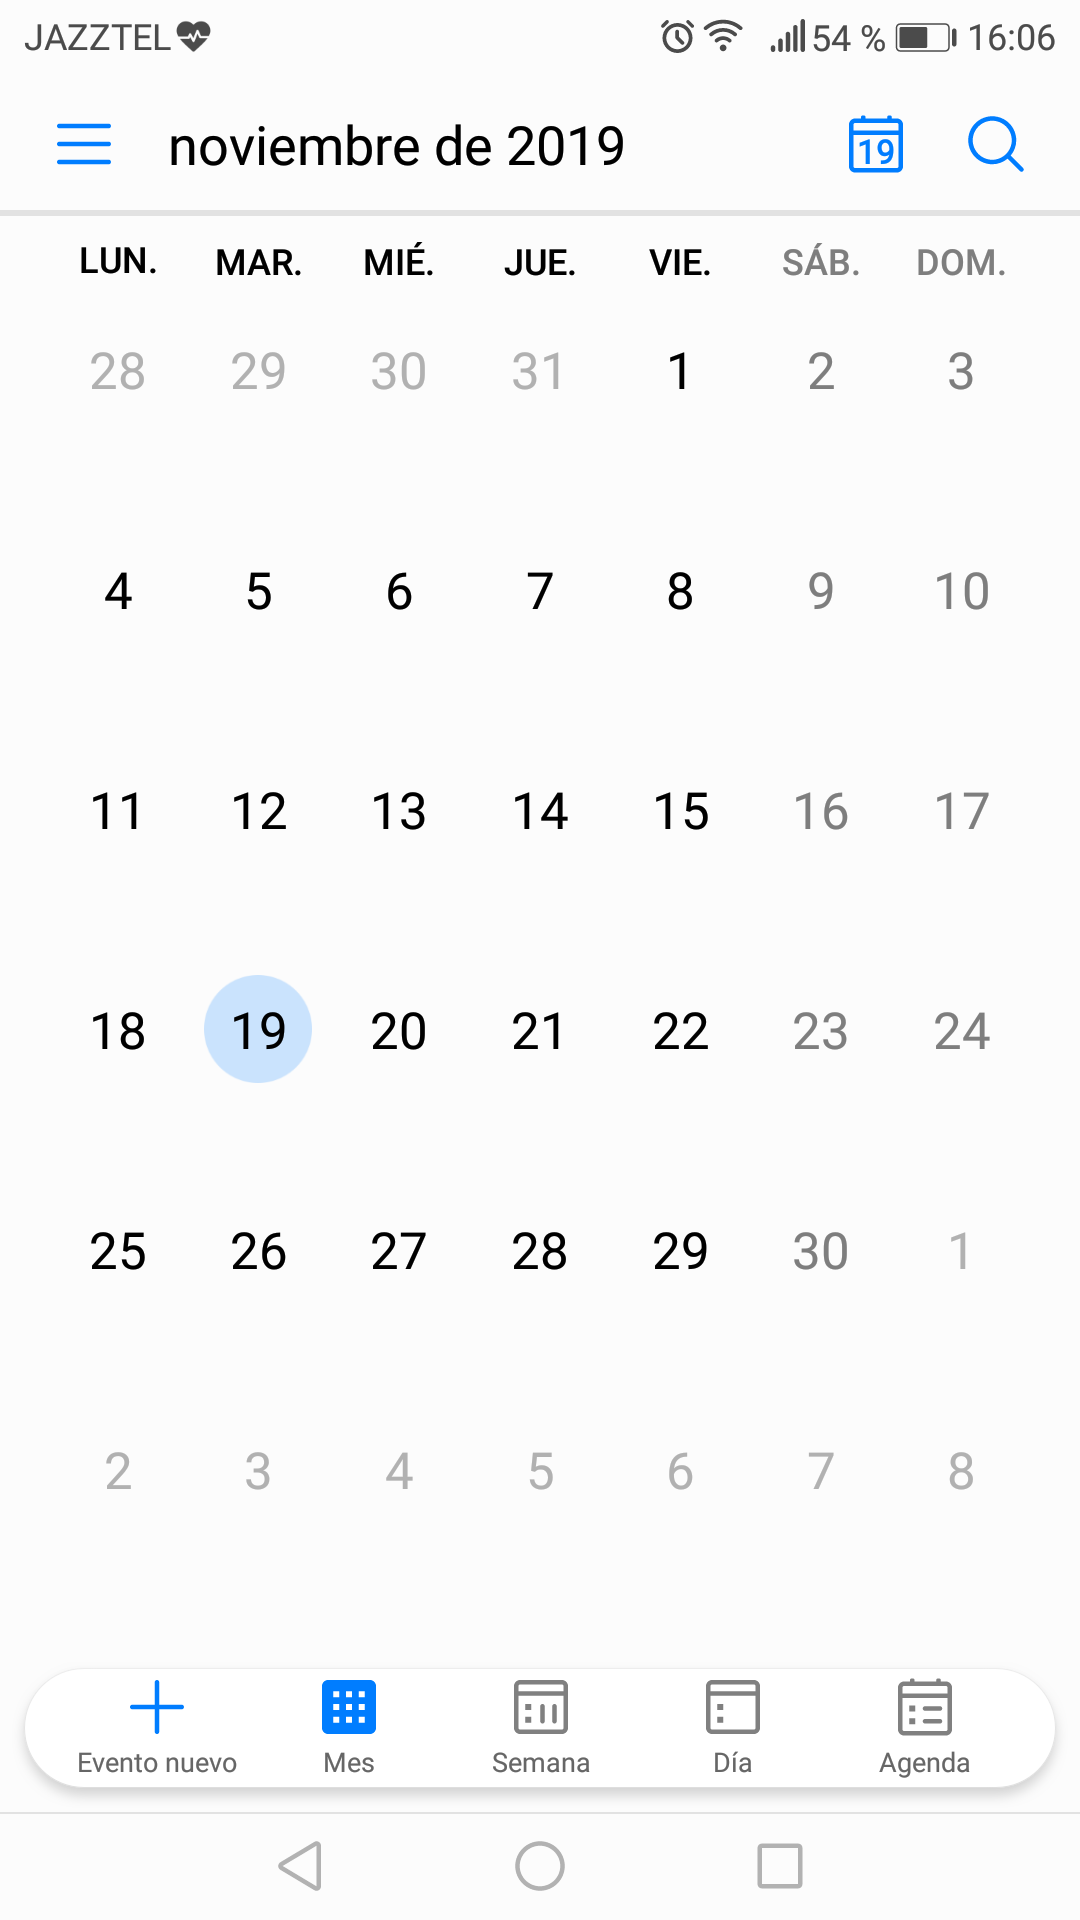 Calendario de Google